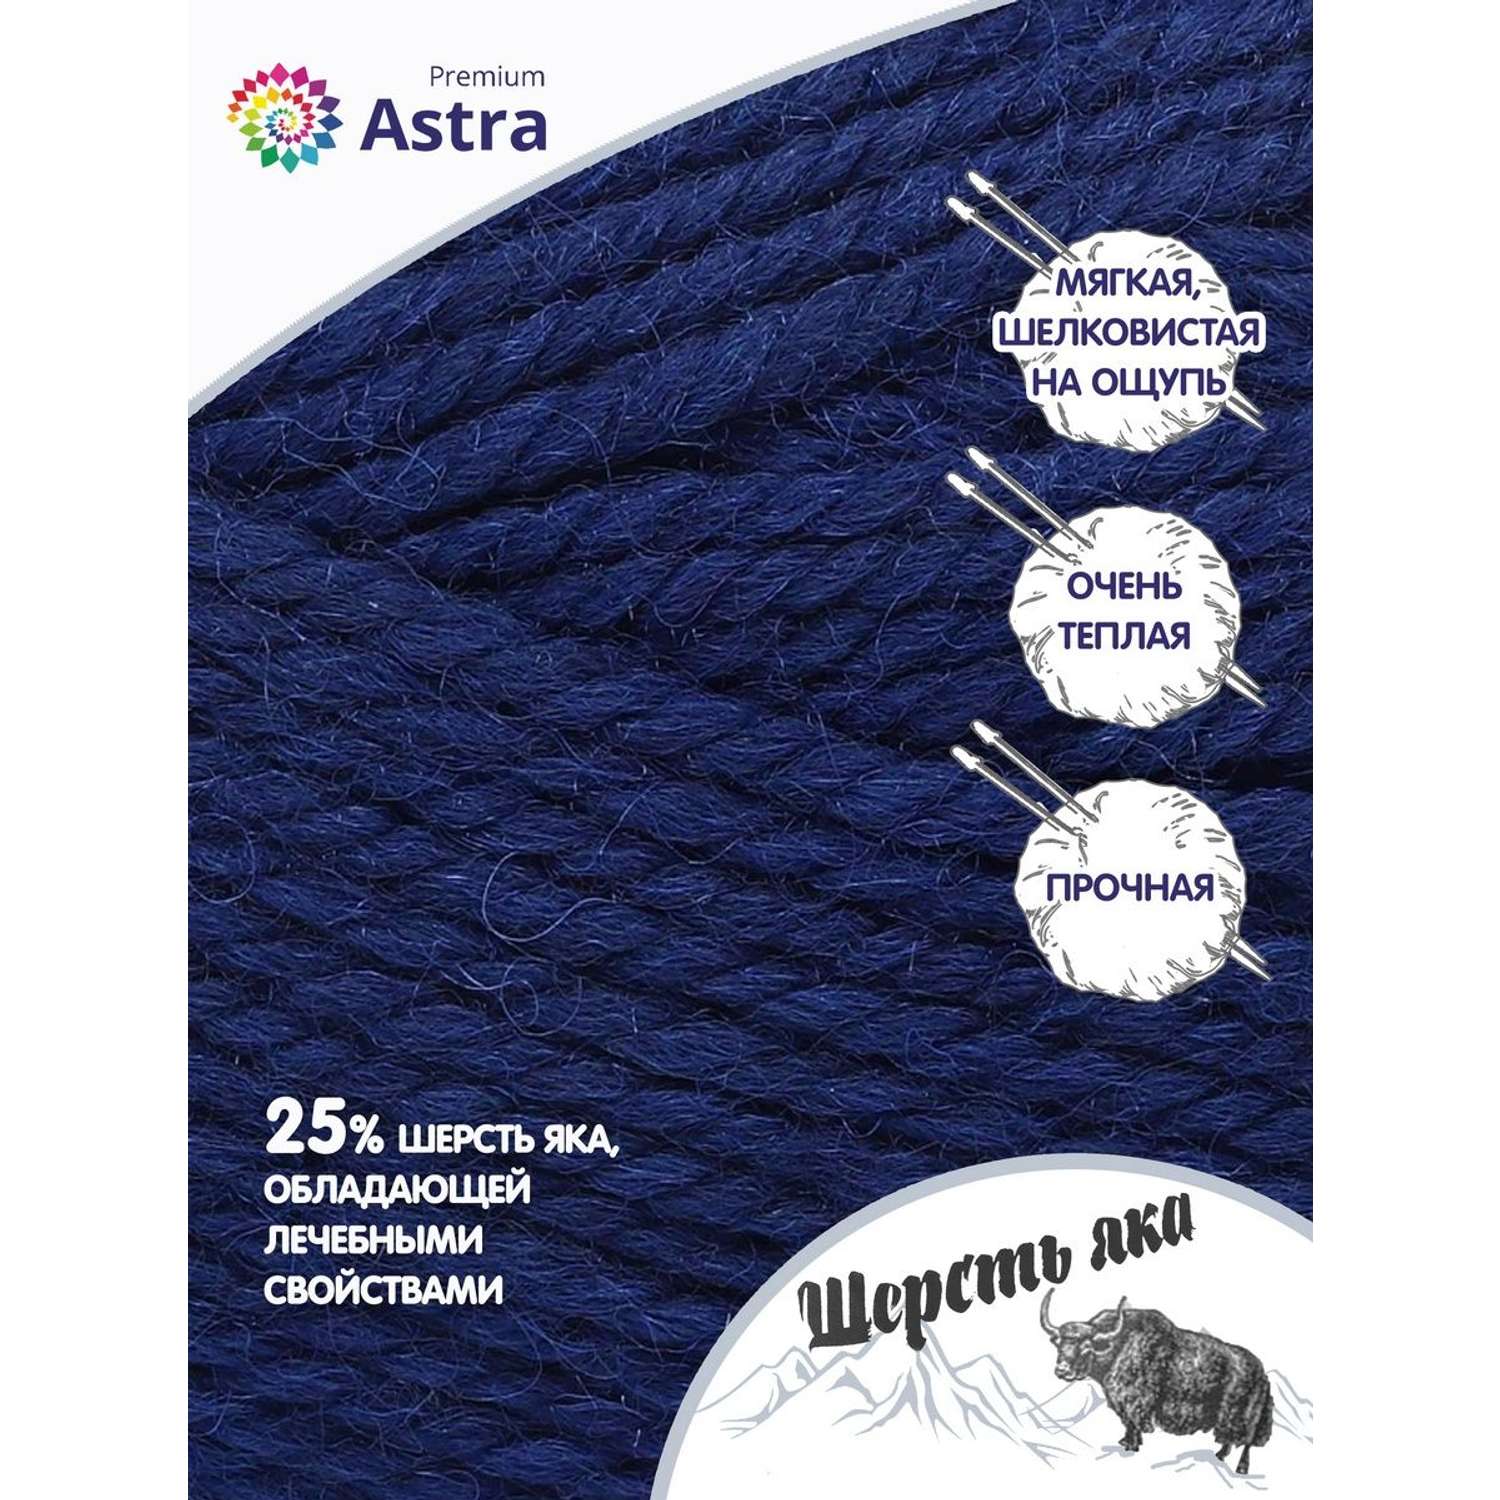 Пряжа Astra Premium Шерсть яка Yak wool теплая мягкая 100 г 120 м 16 темно-синий 2 мотка - фото 2